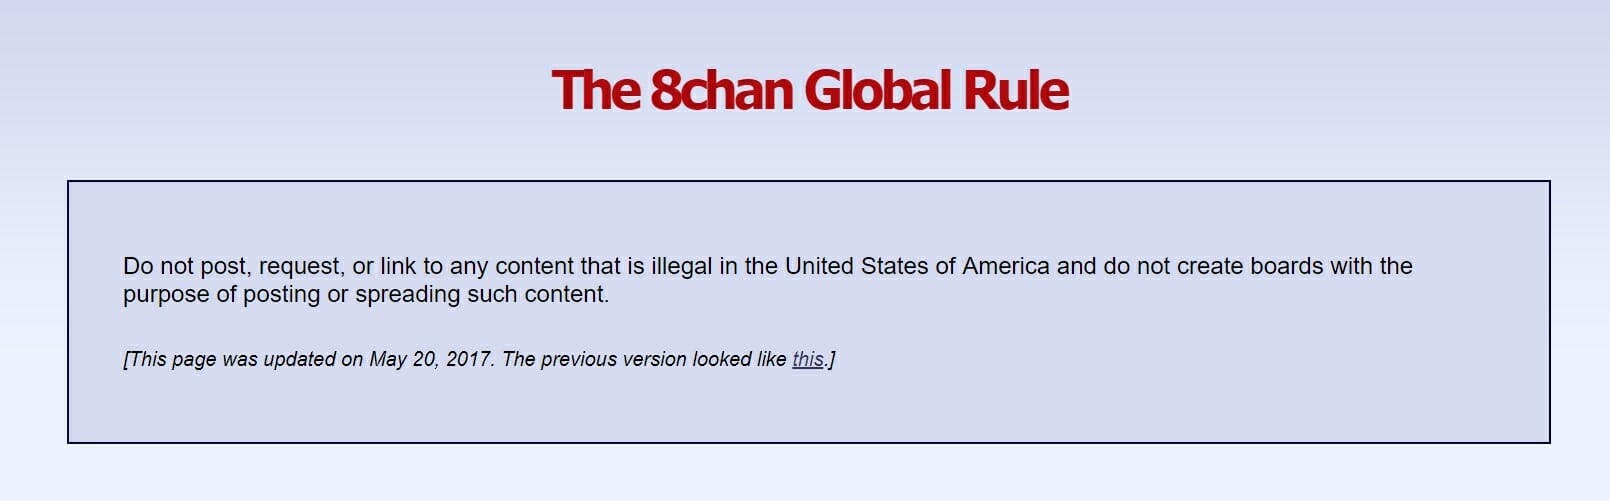 8chan Global Rule